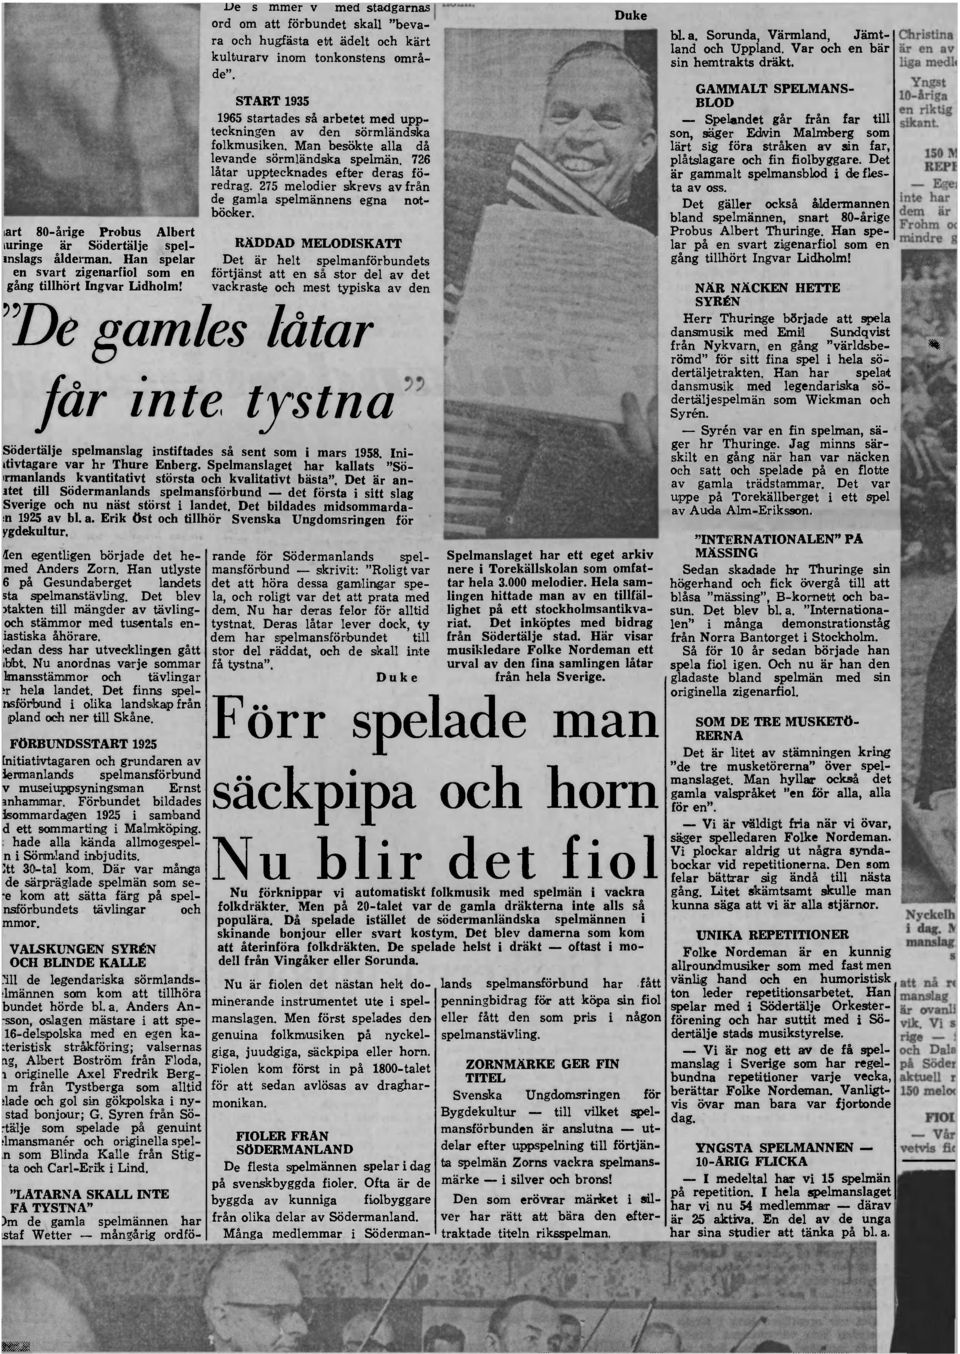 GAMMALT SPELMANS- START 1935 BLOD 1965 startades så arbetet med uppteckningen av den sörmländska son, säger Edvin Malmberg som Spelandet går från far till folkmusiken.